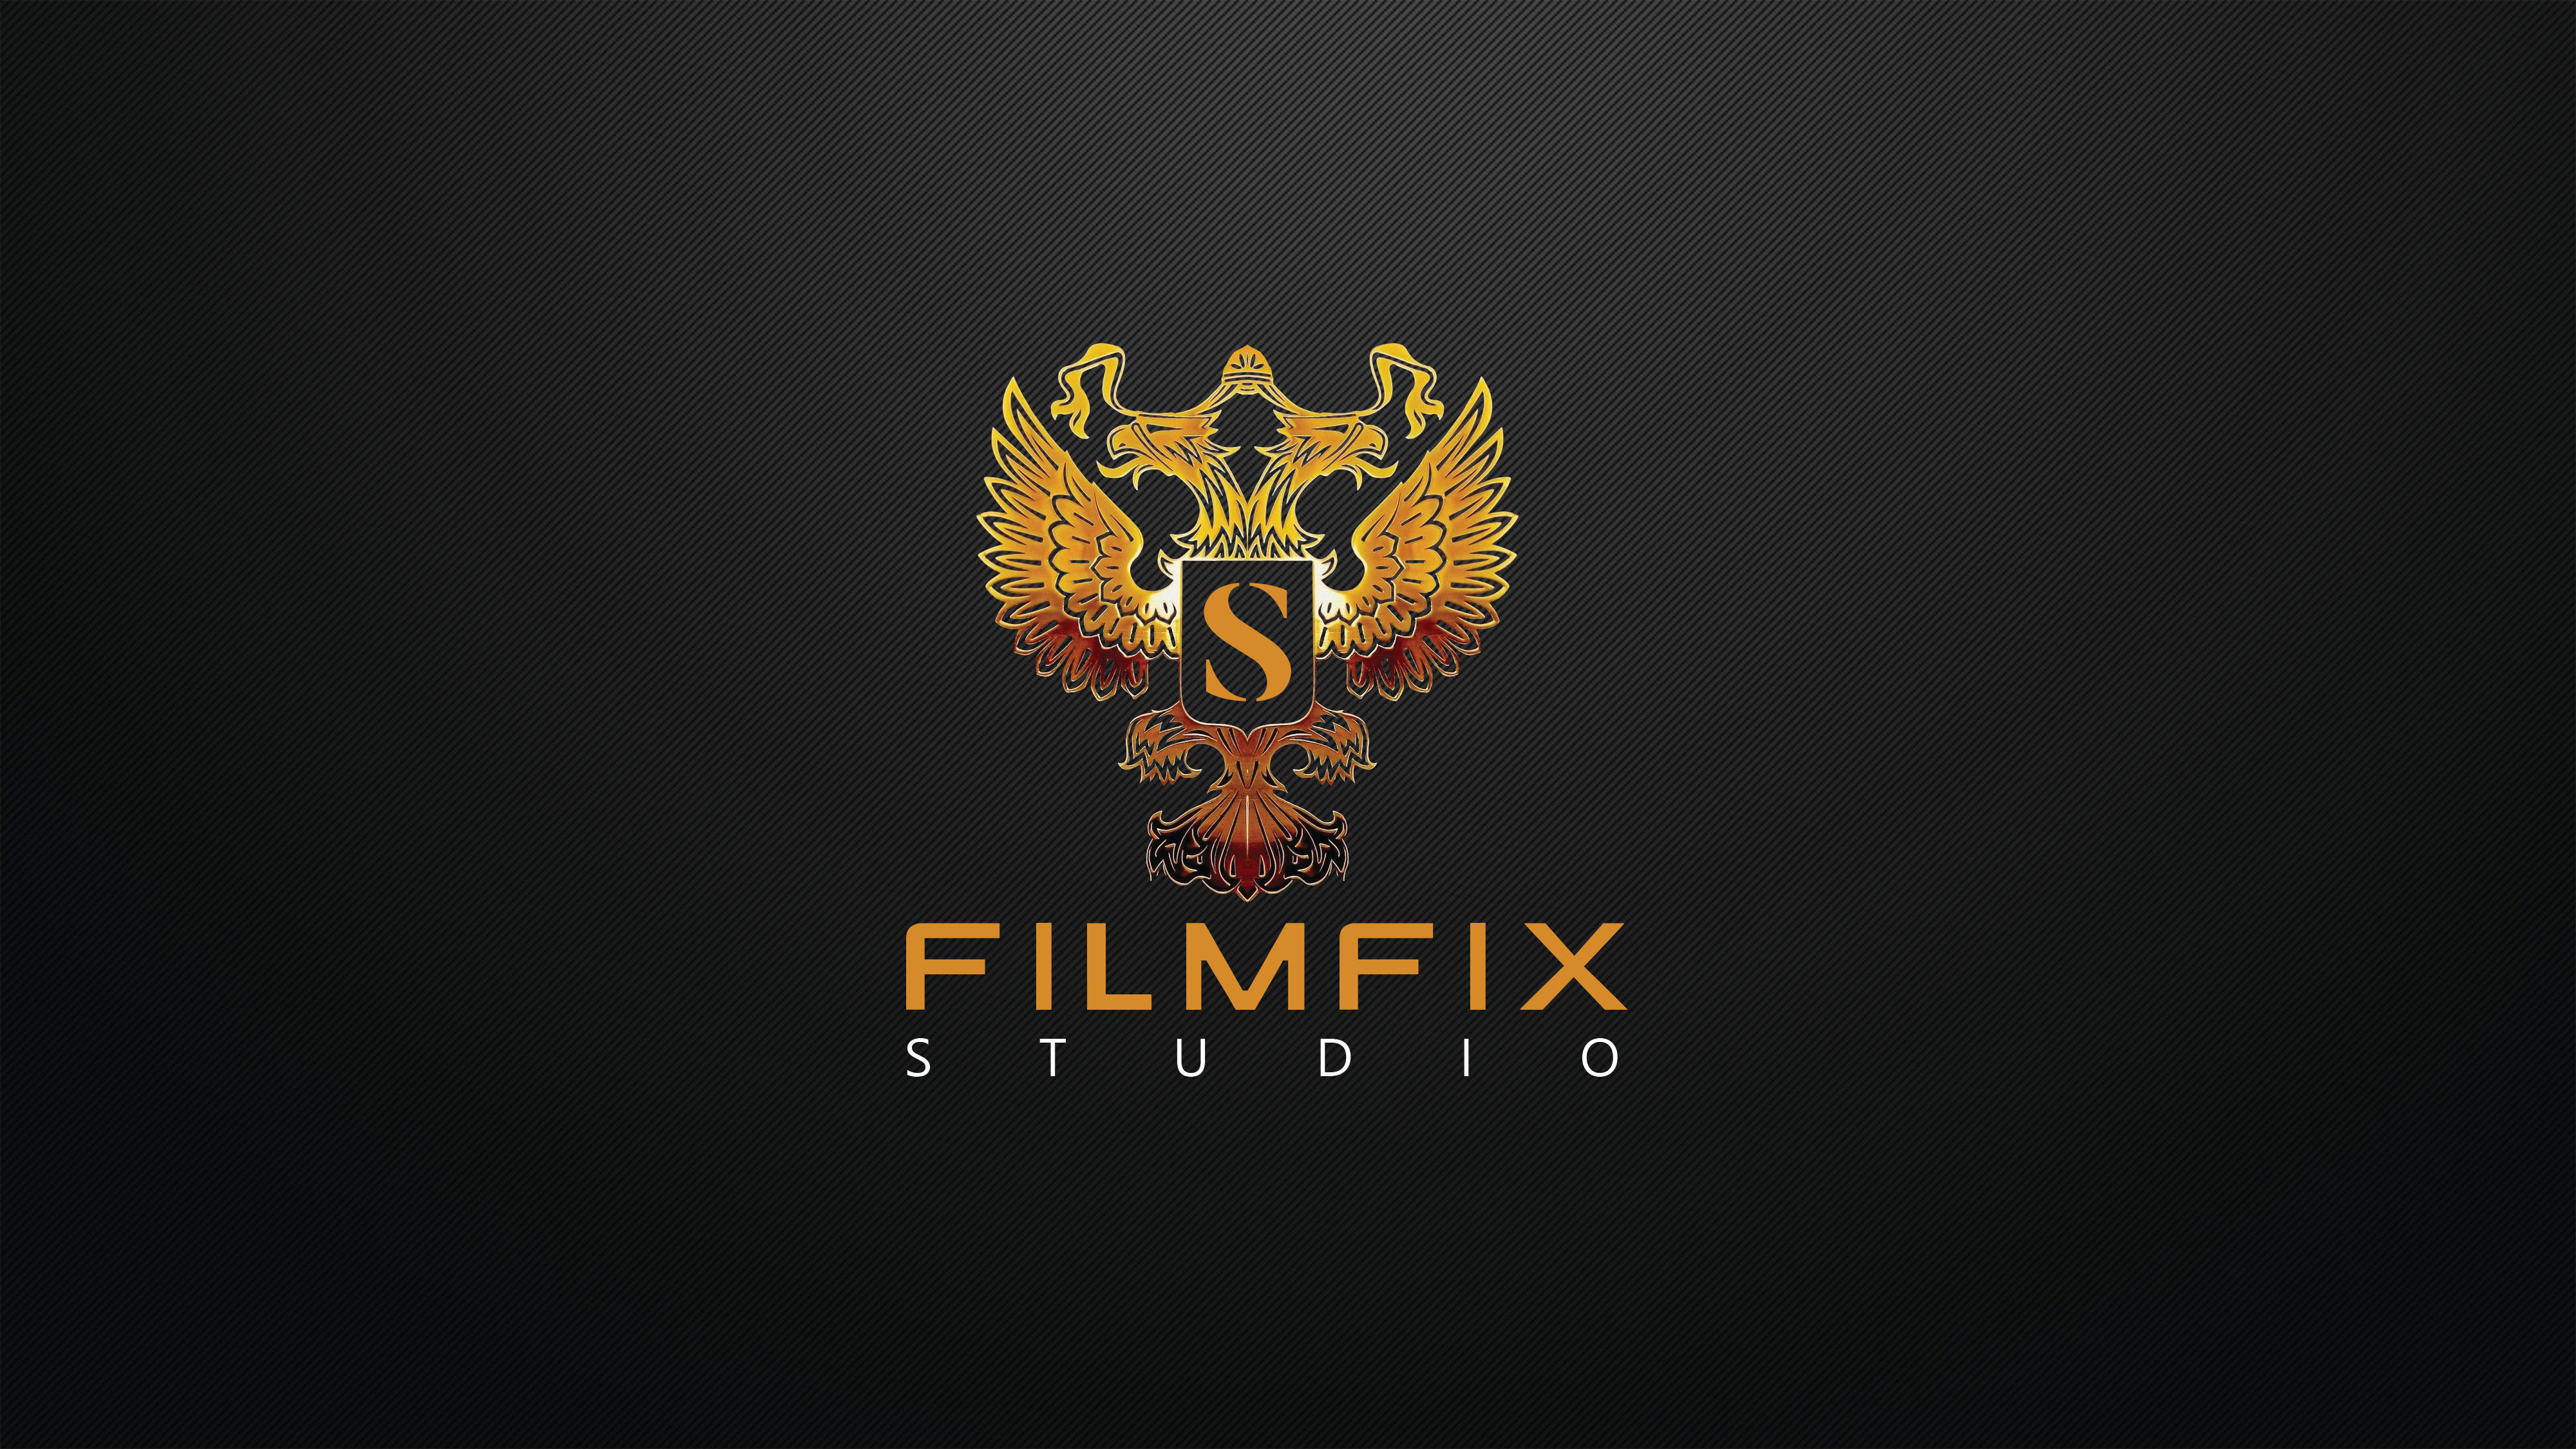 Filmfix Studio